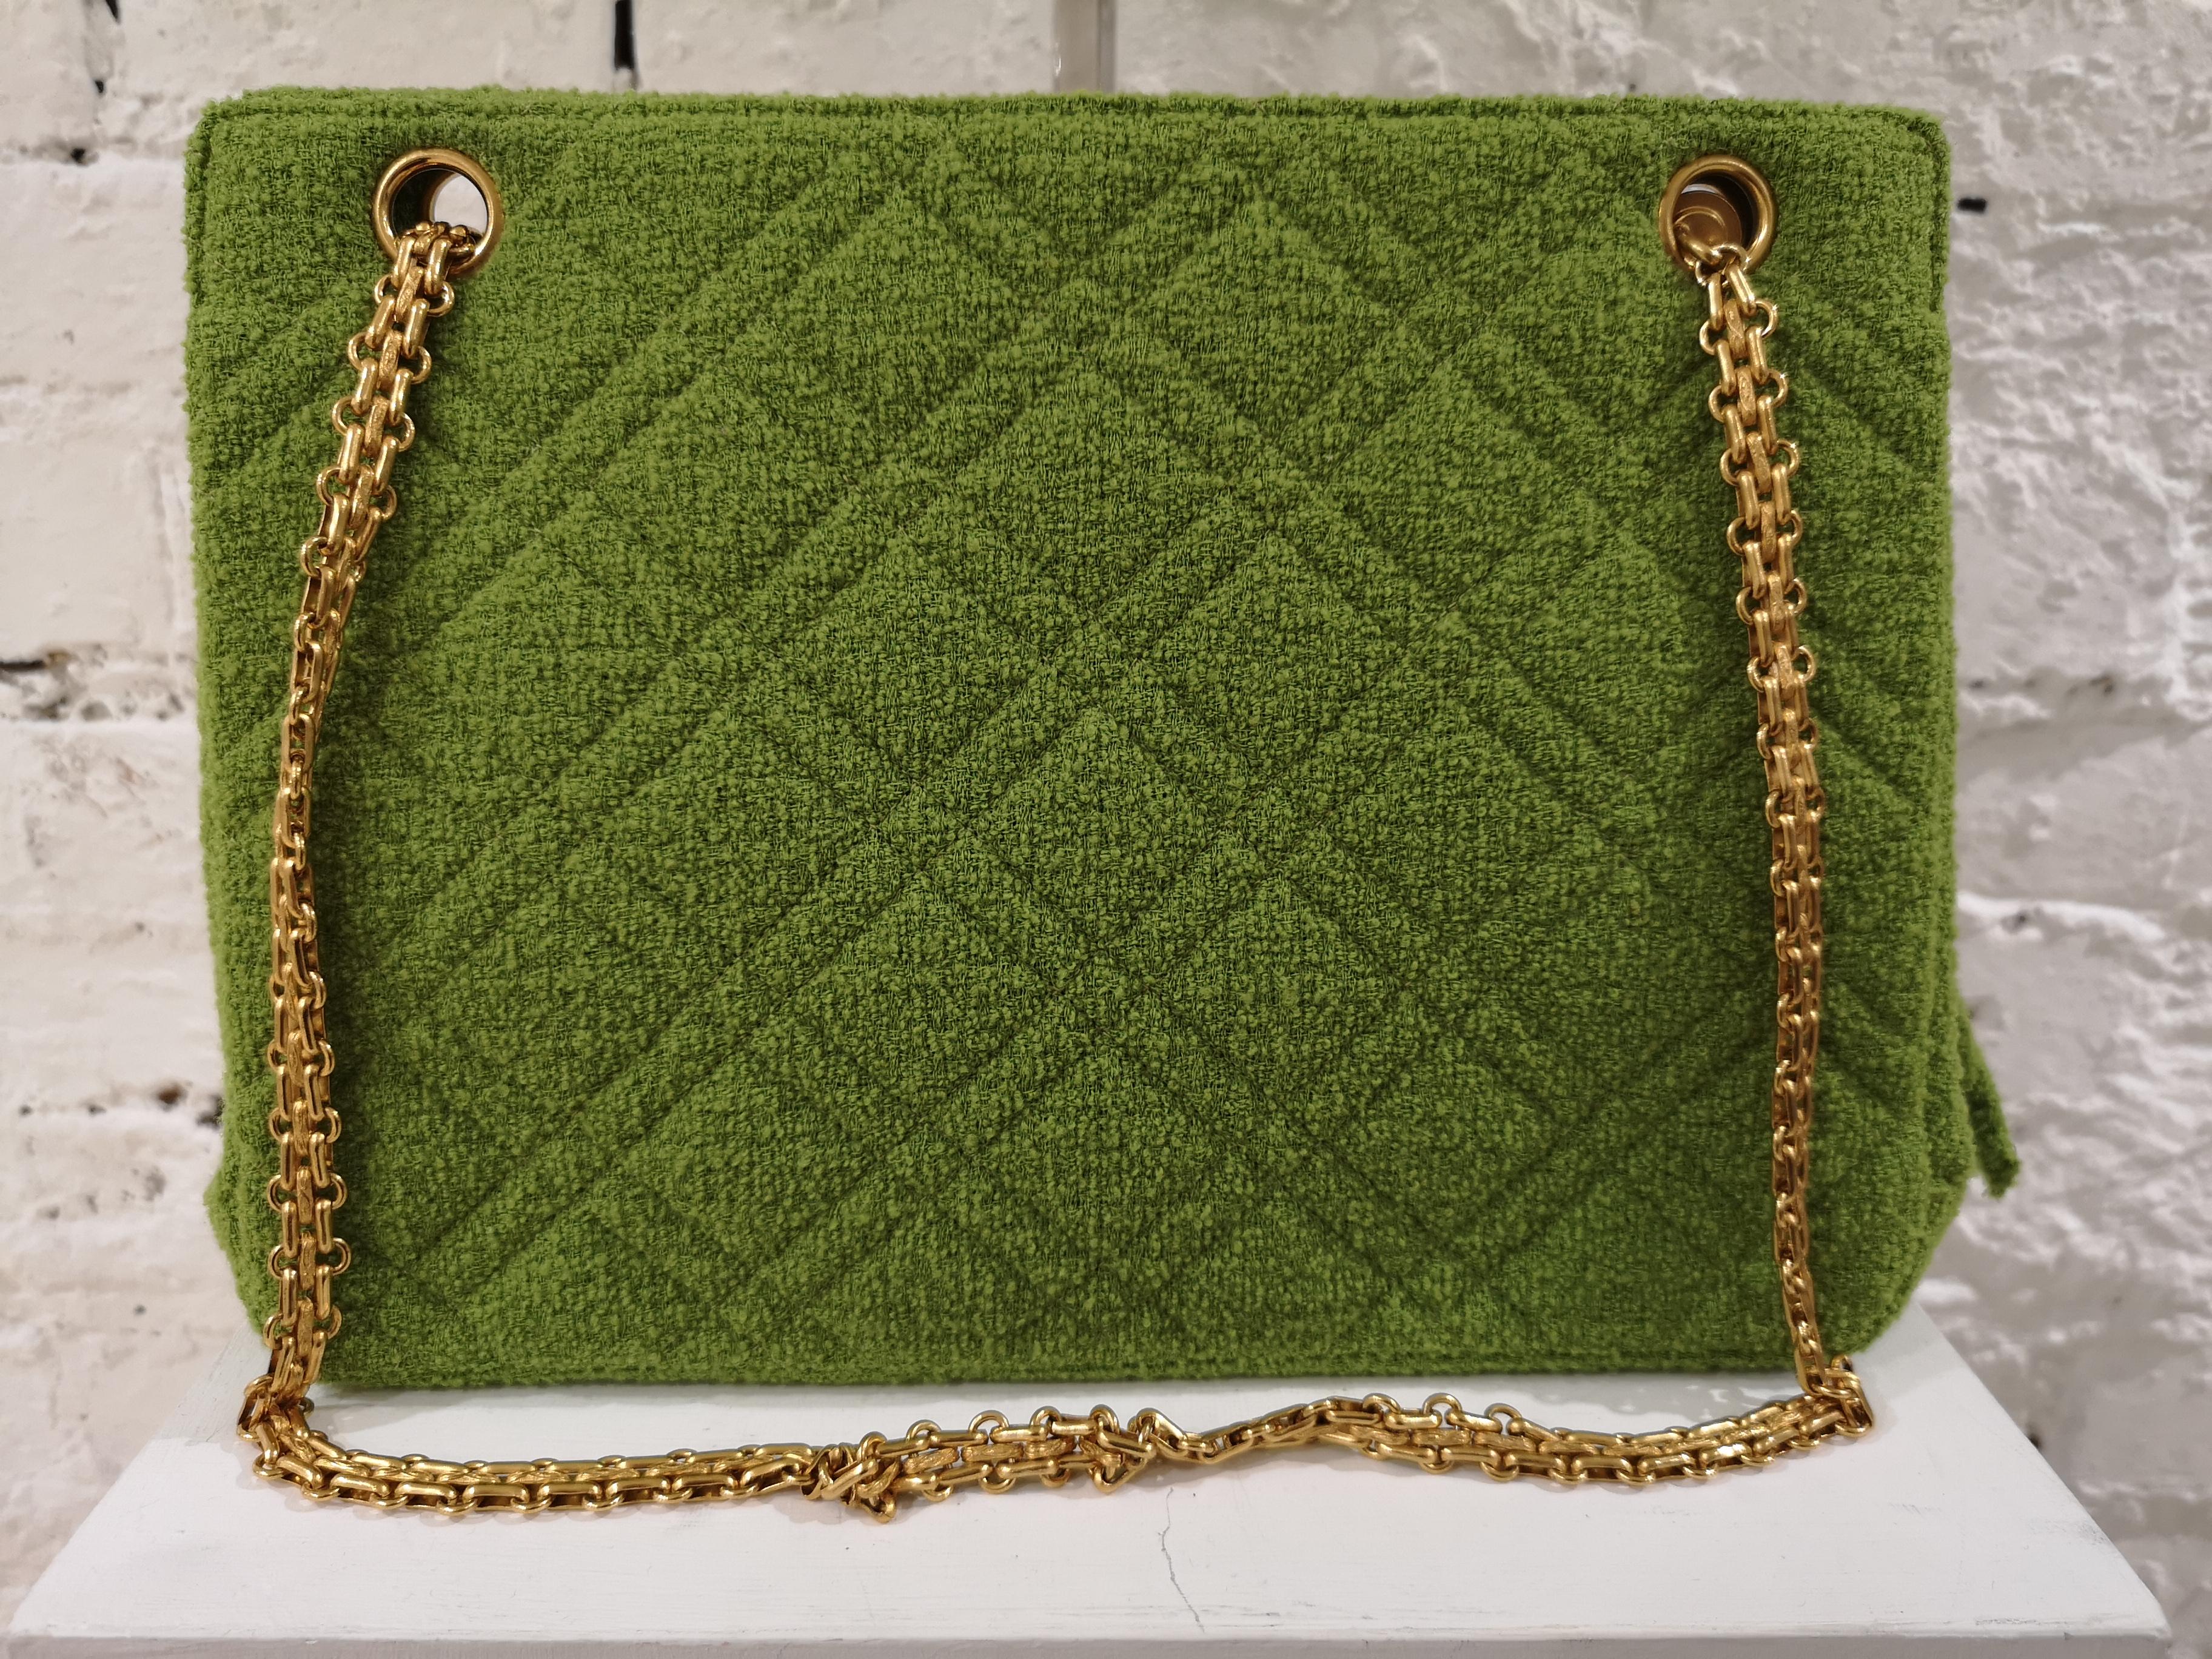 Chanel Vintage Green Bag 2